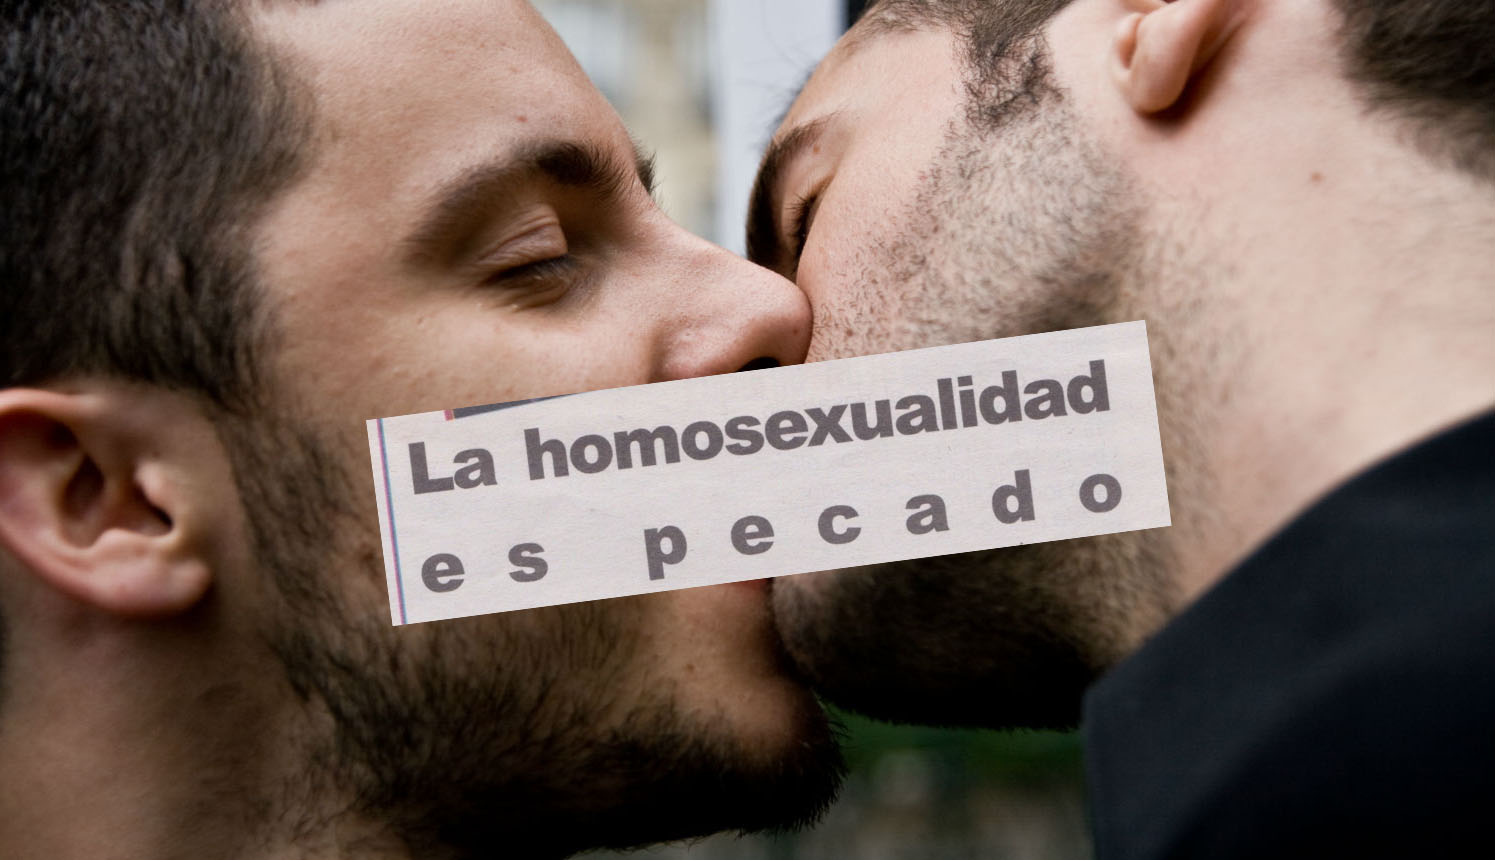 “La homosexualidad está equiparada con la pedofilia o la poligamia”